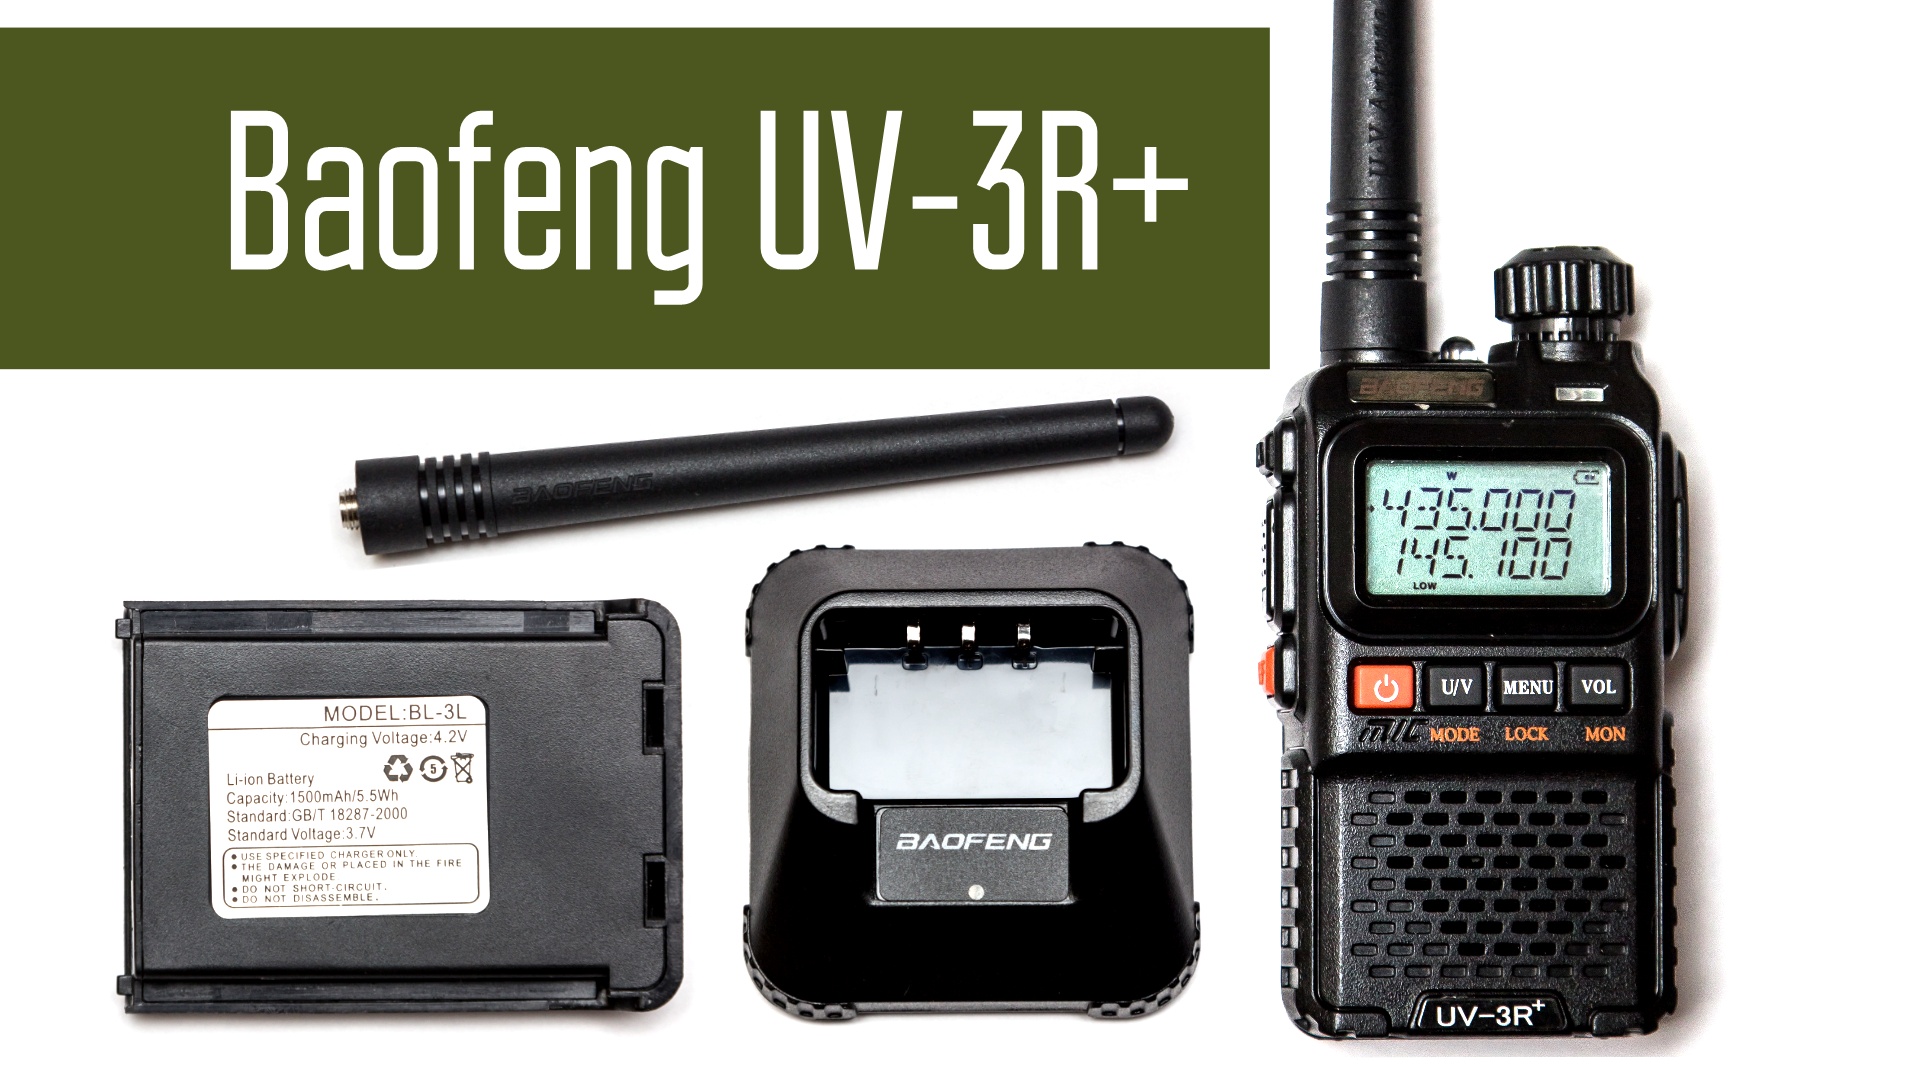 Baofeng UV-3R+ двухдиапазонная радиостанция. Полный обзор. Проверка, разборка, измерение мощности.